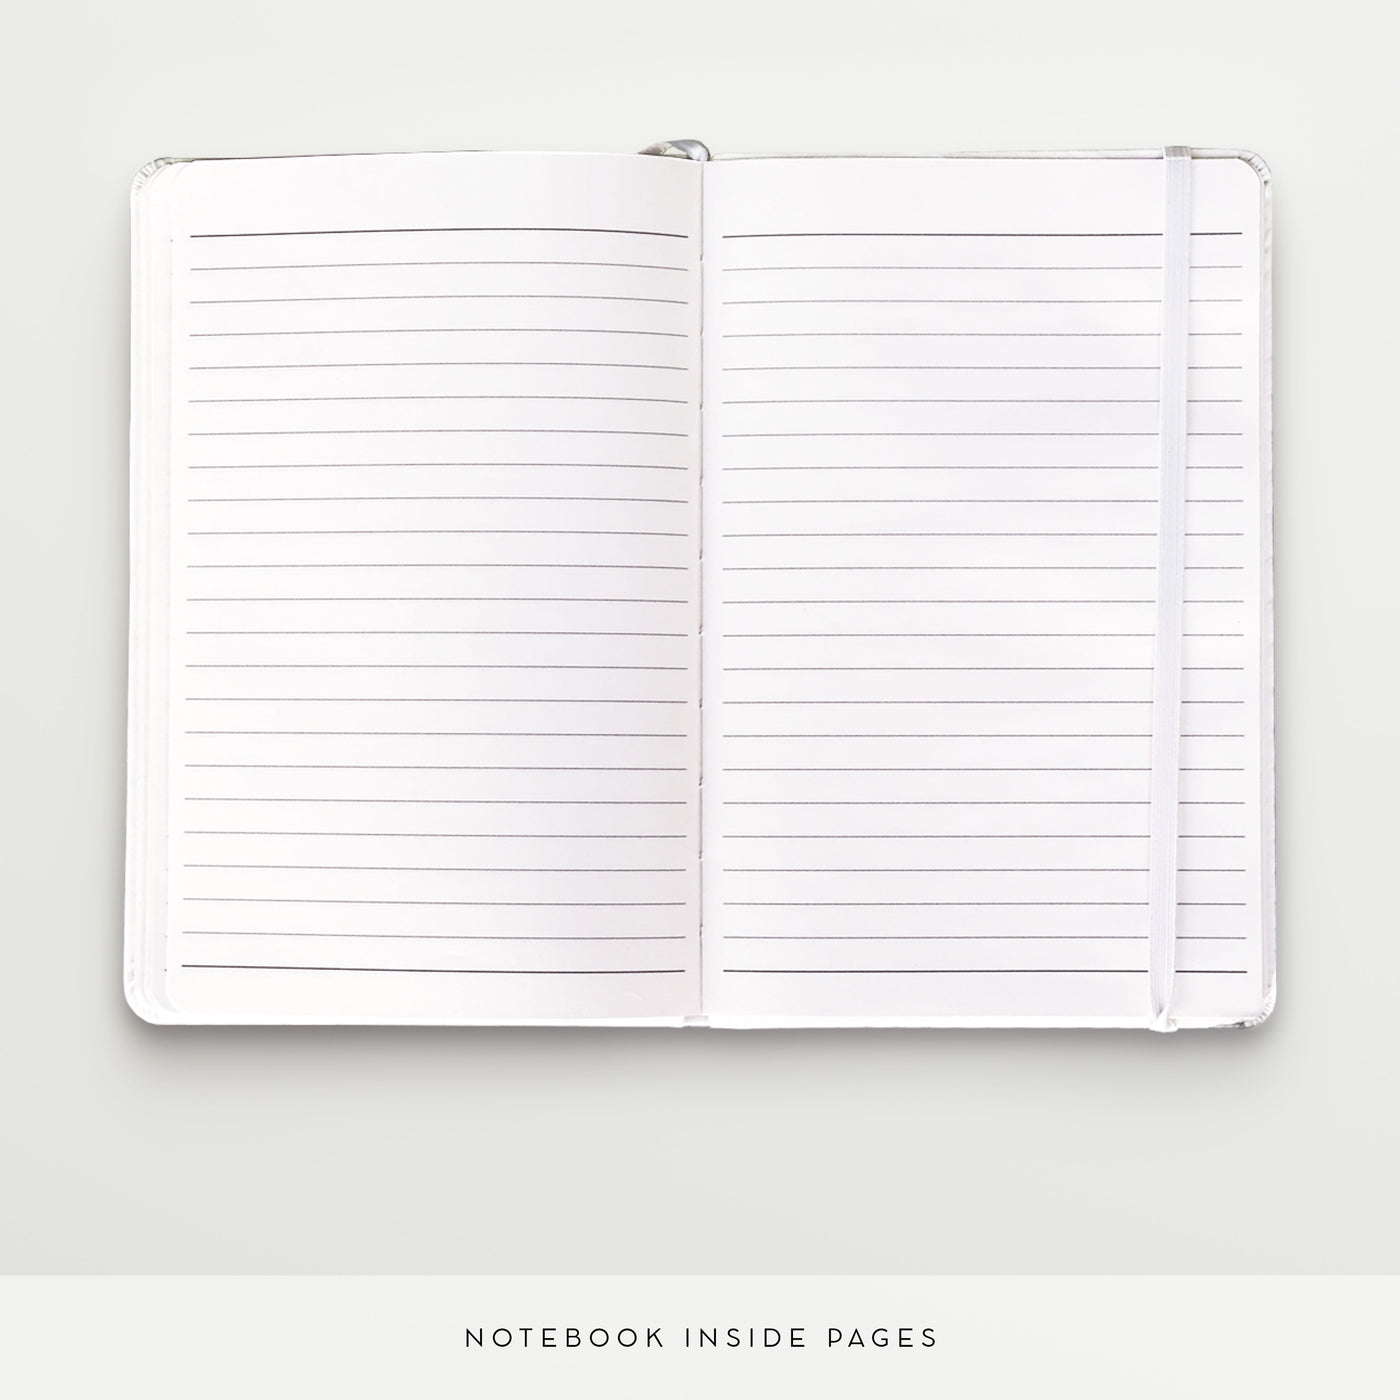 Cedar Creek - Personalised Notebook, Journal